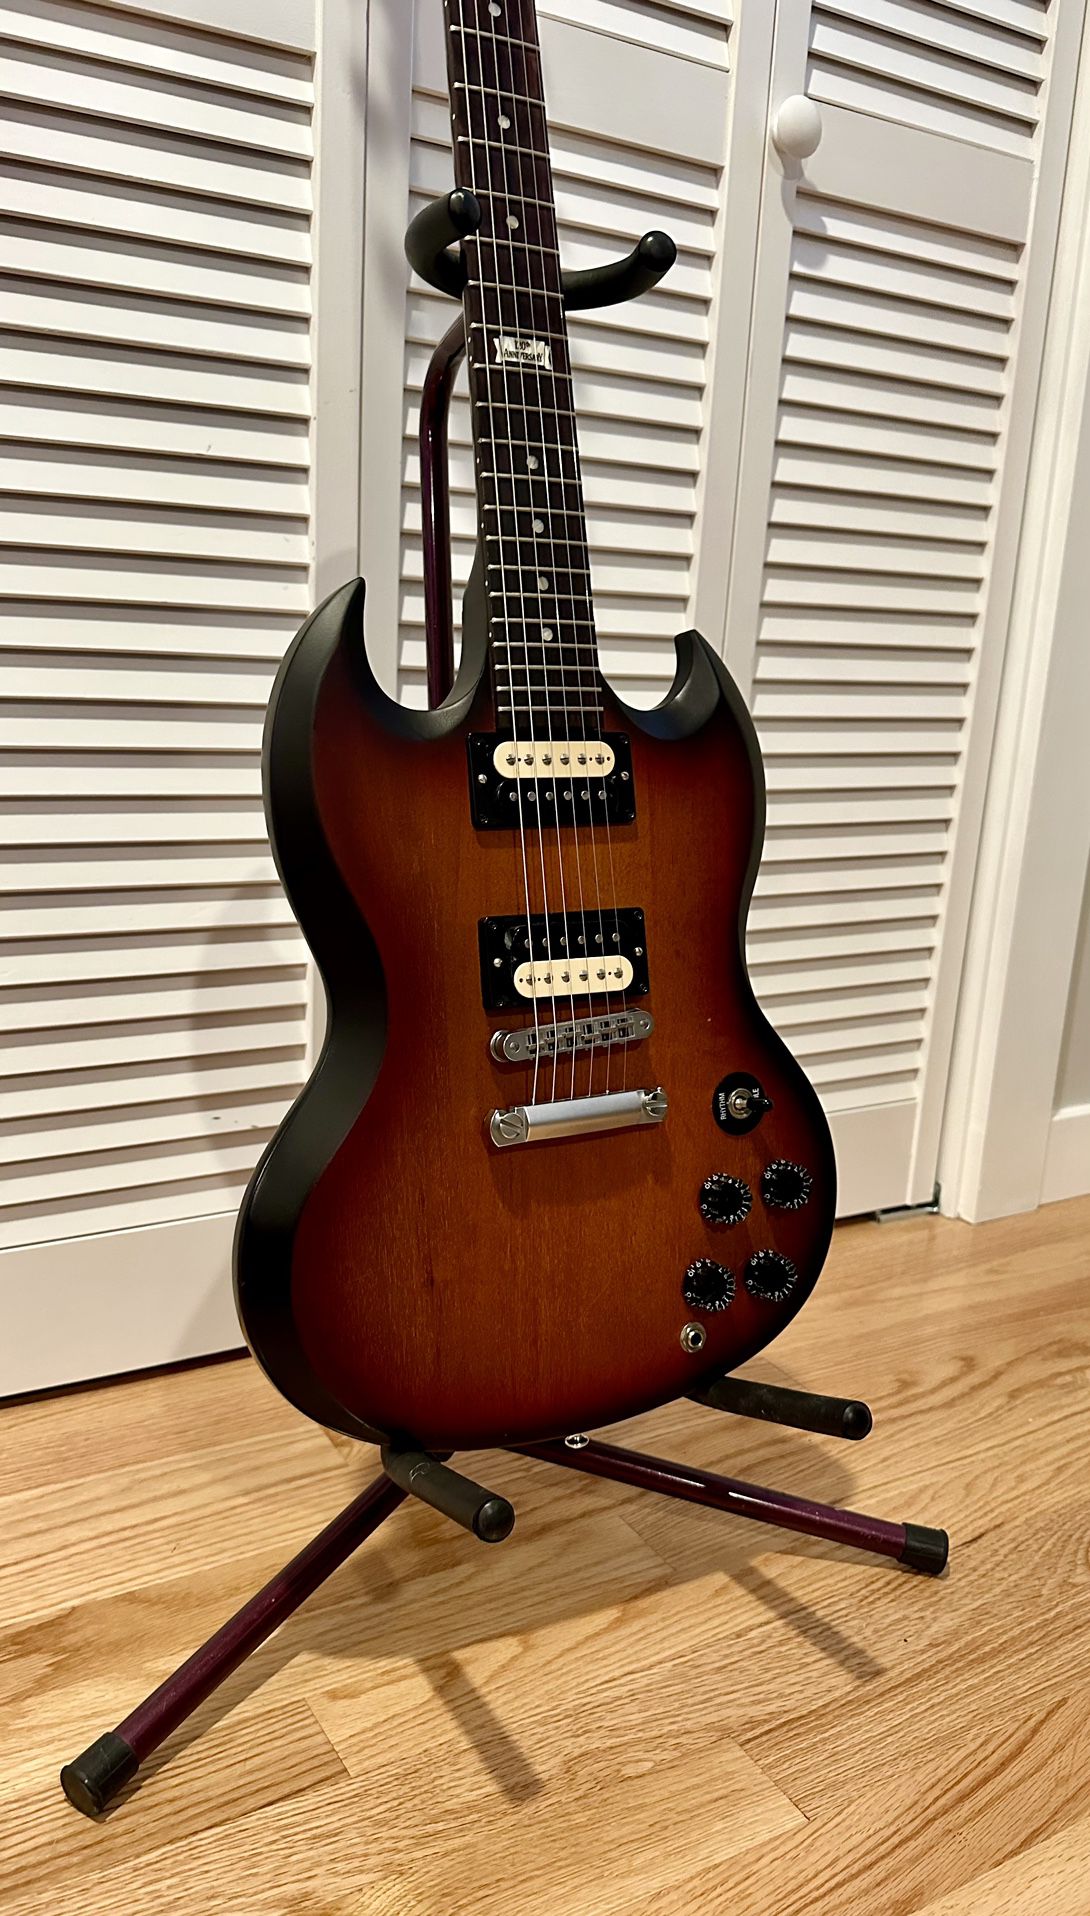 Gibson SGM